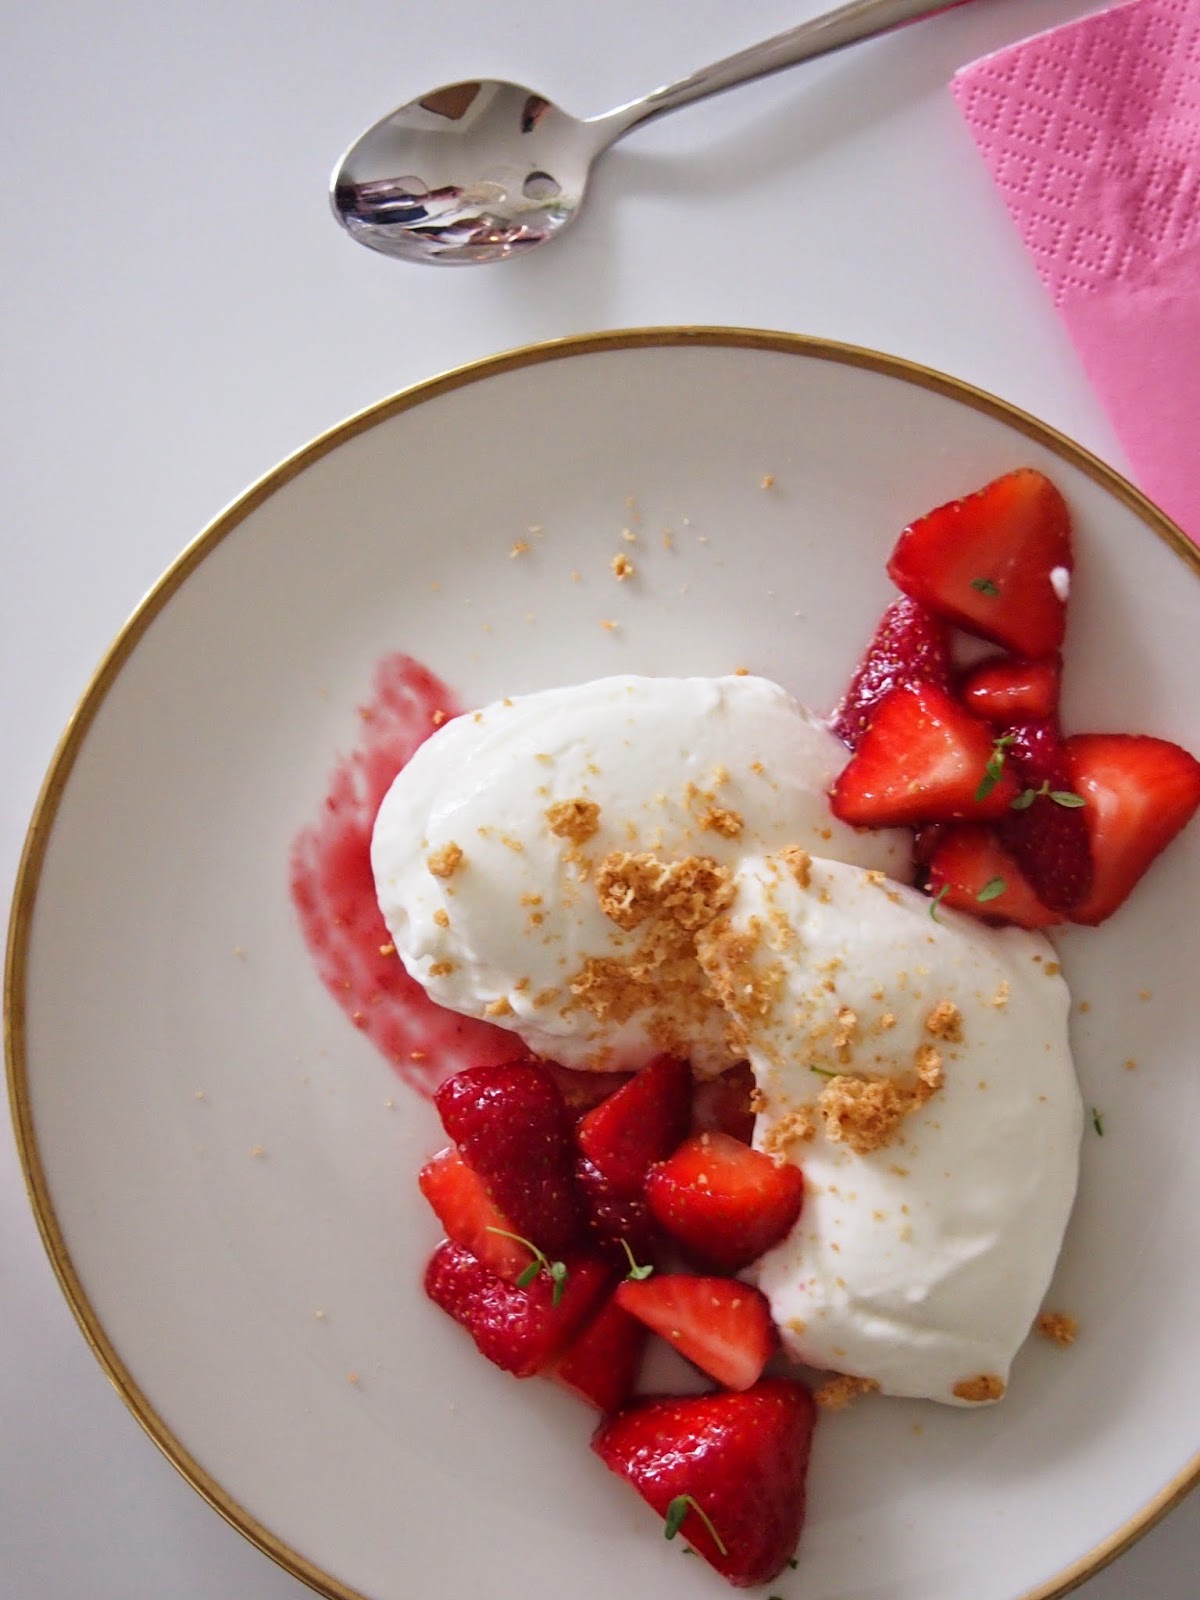 dieZuckerbäckerei: Joghurt-Vanille-Mousse mit Erdbeersalat und Knusper